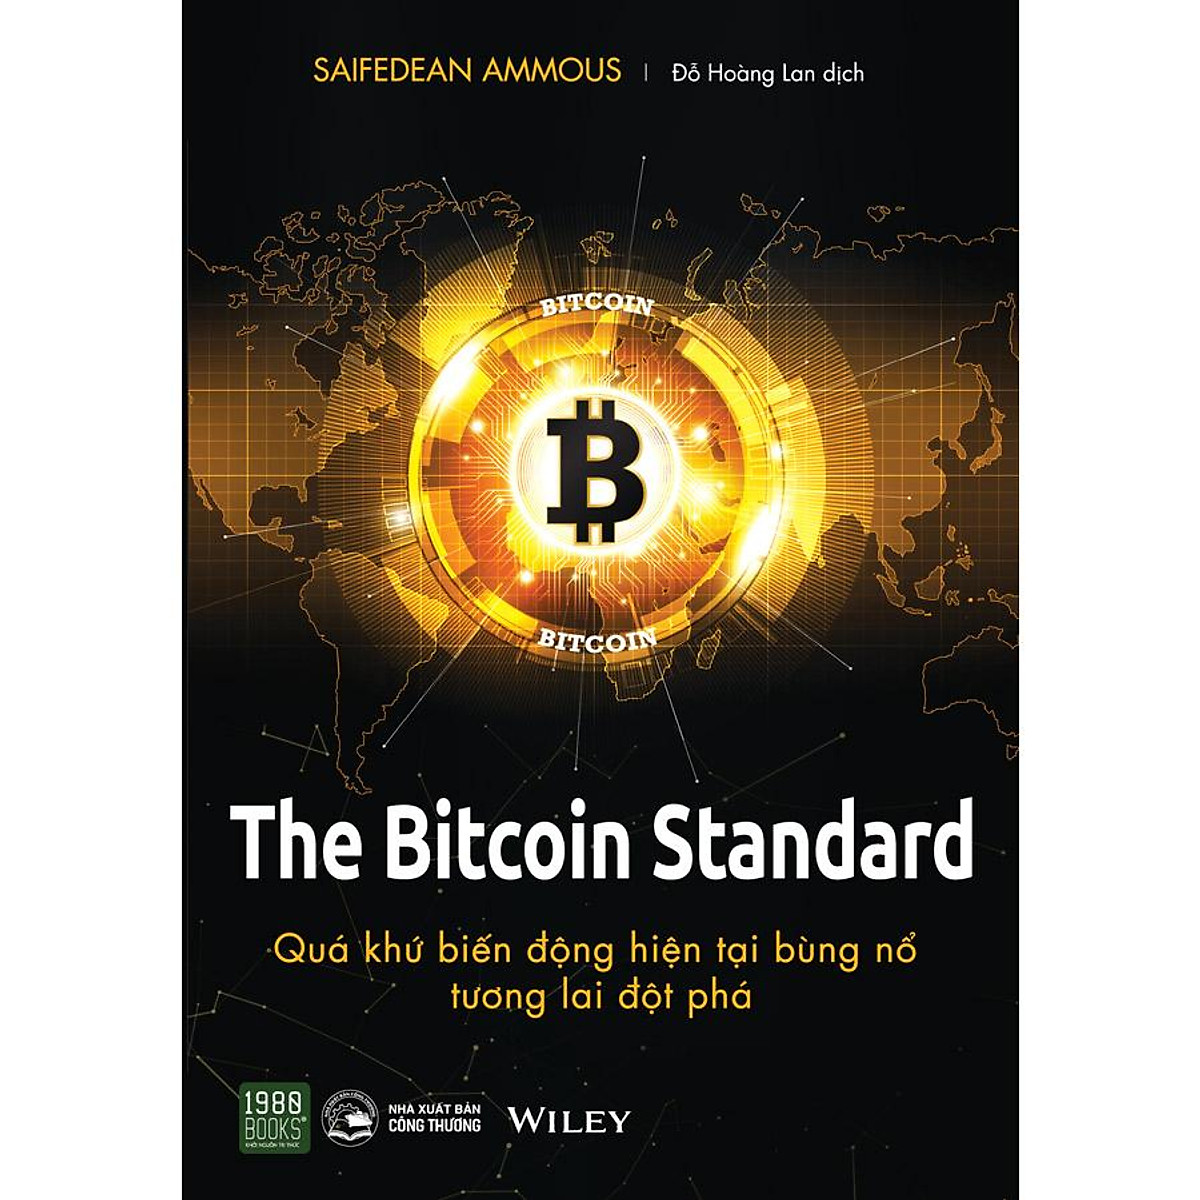 The Bitcoin Standard - Quá Khứ Biến Động, Hiện Tại Bùng Nổ, Tương Lai Đột Phá ebook PDF-EPUB-AWZ3-PRC-MOBI